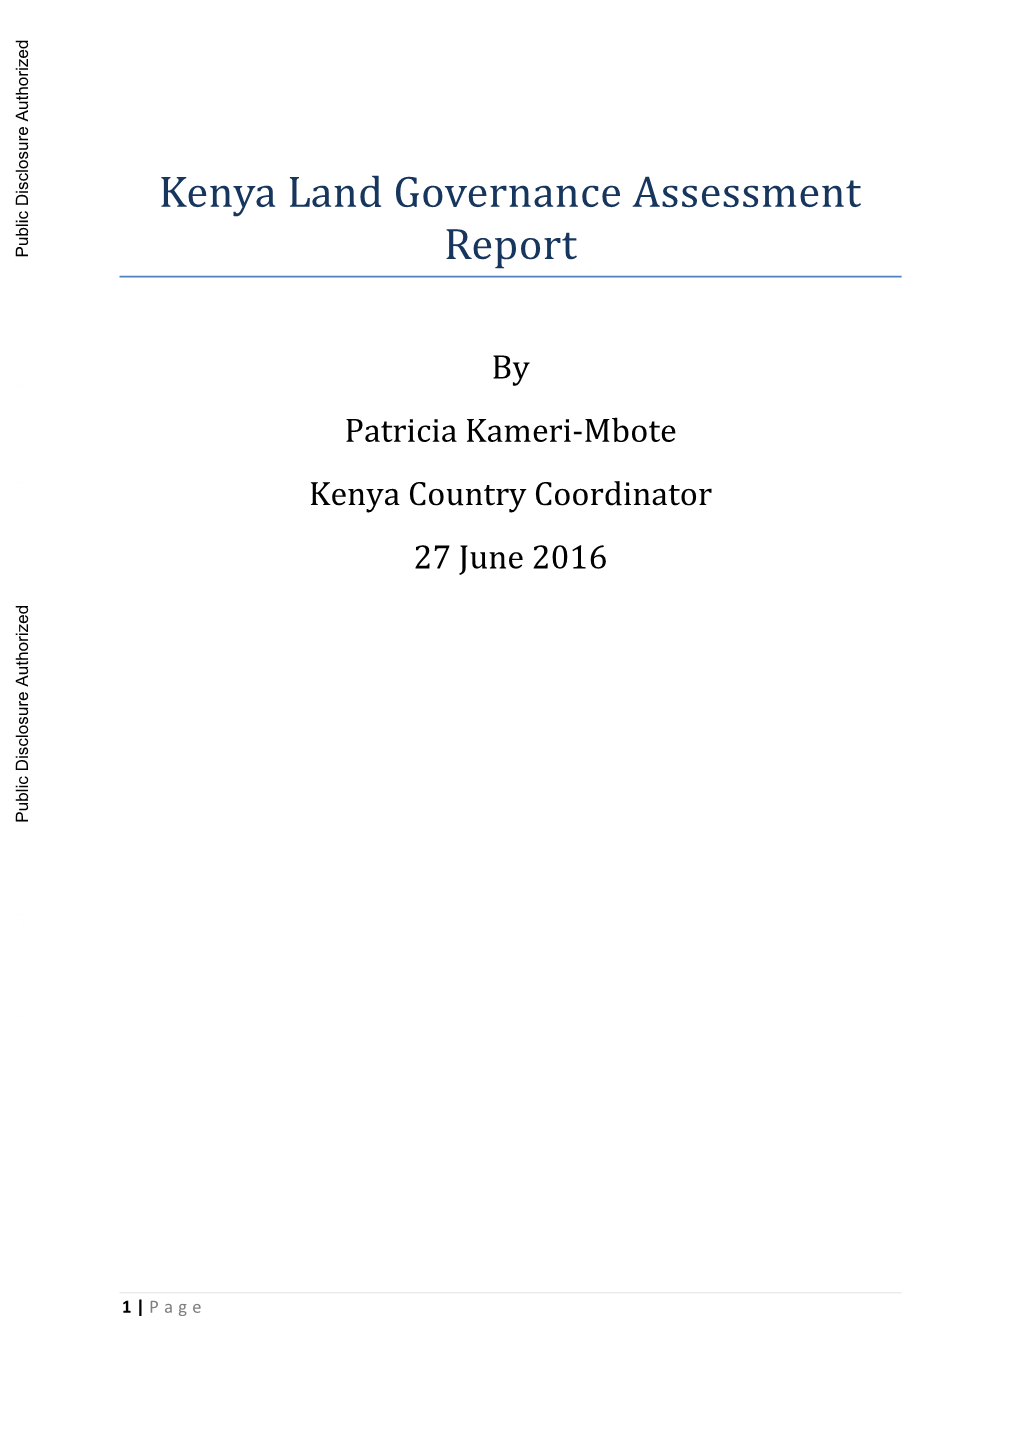 Kenya Land Governance Assessment Report